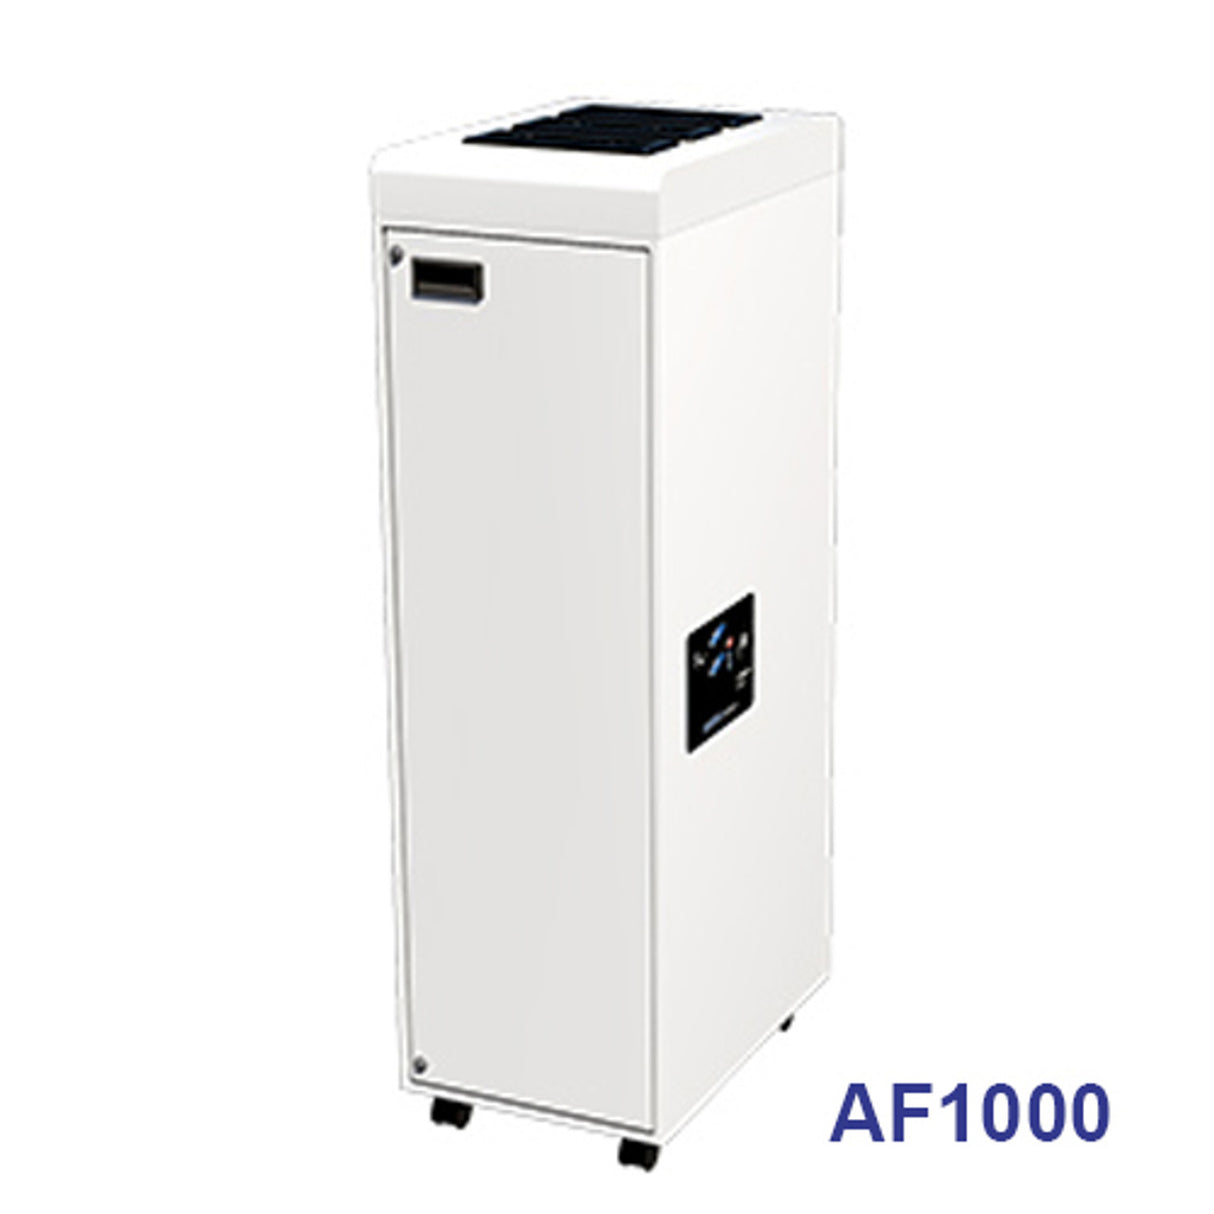 AF2000 Fresh-Air Series Air Purifier from Quatro